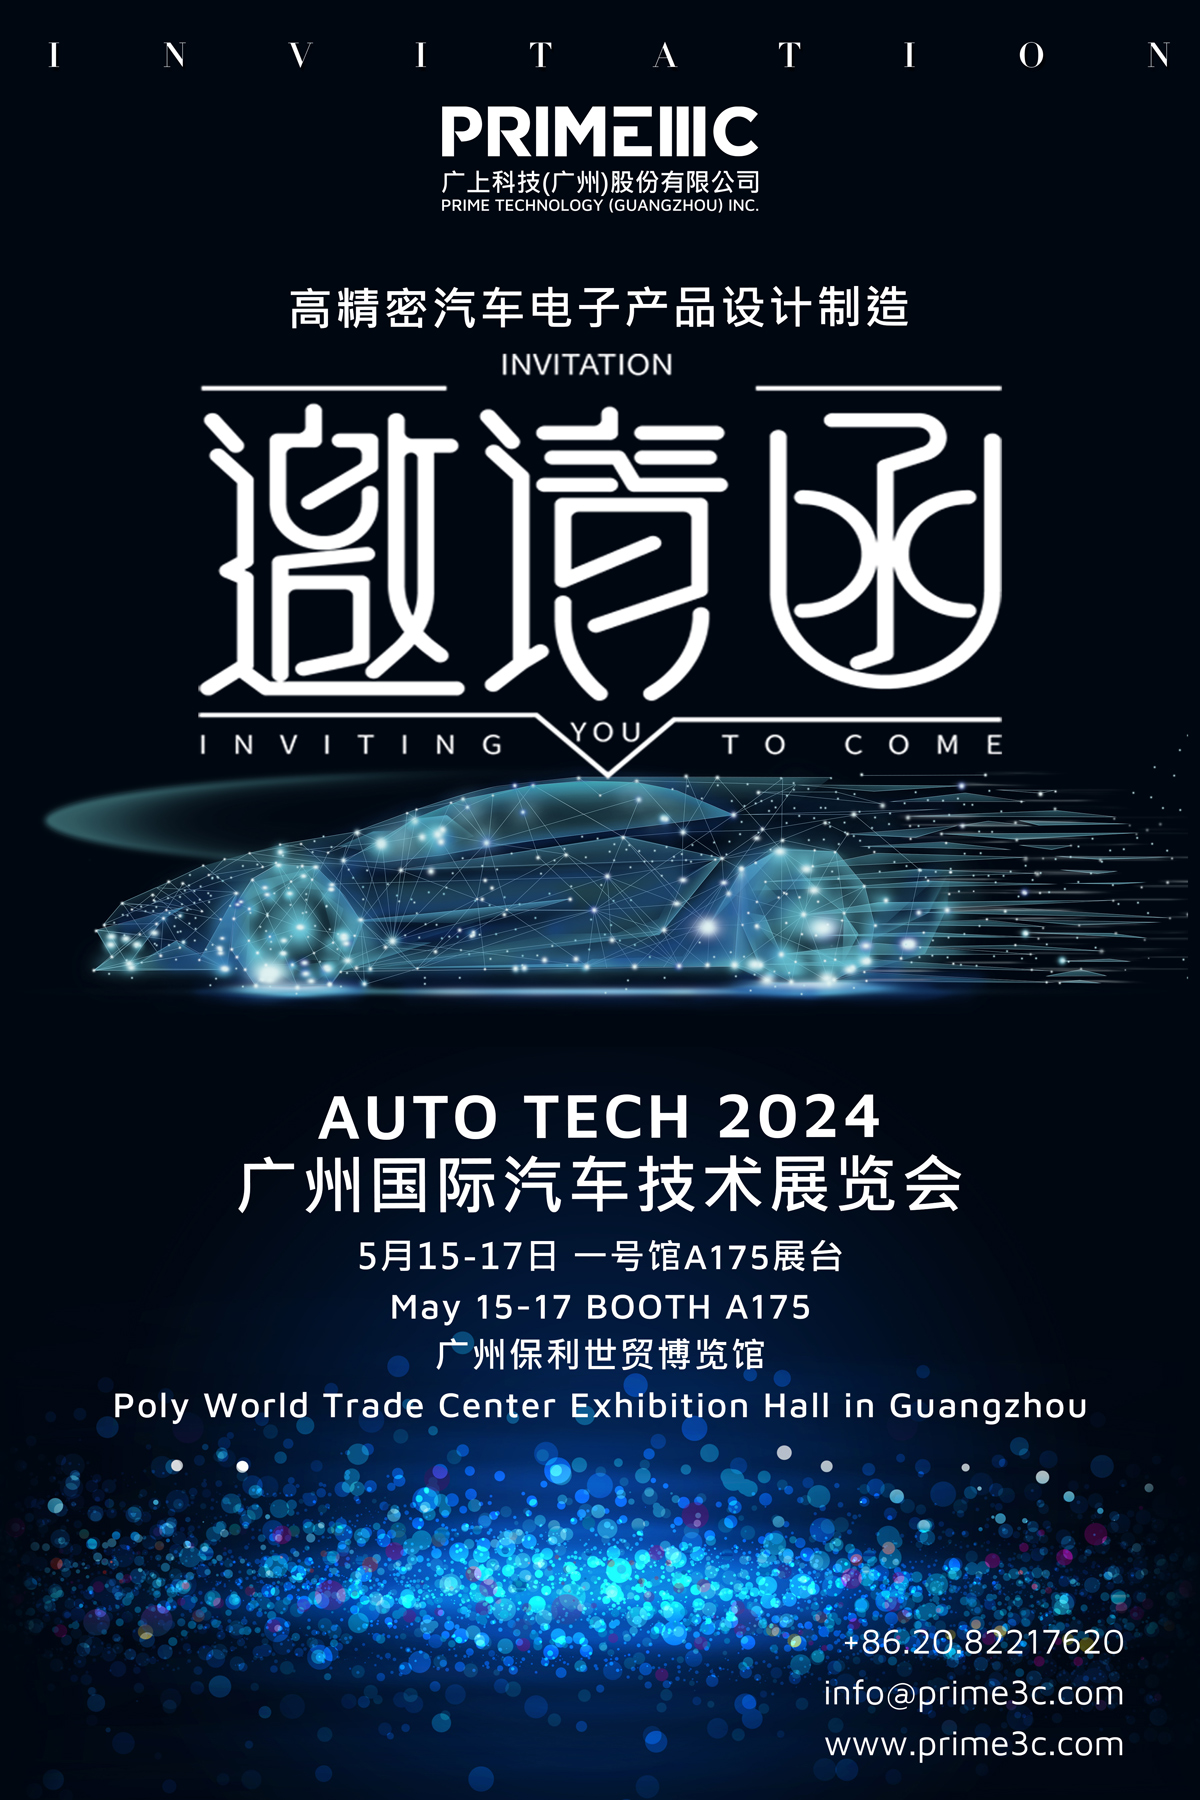 auto tech 2024 invitation 